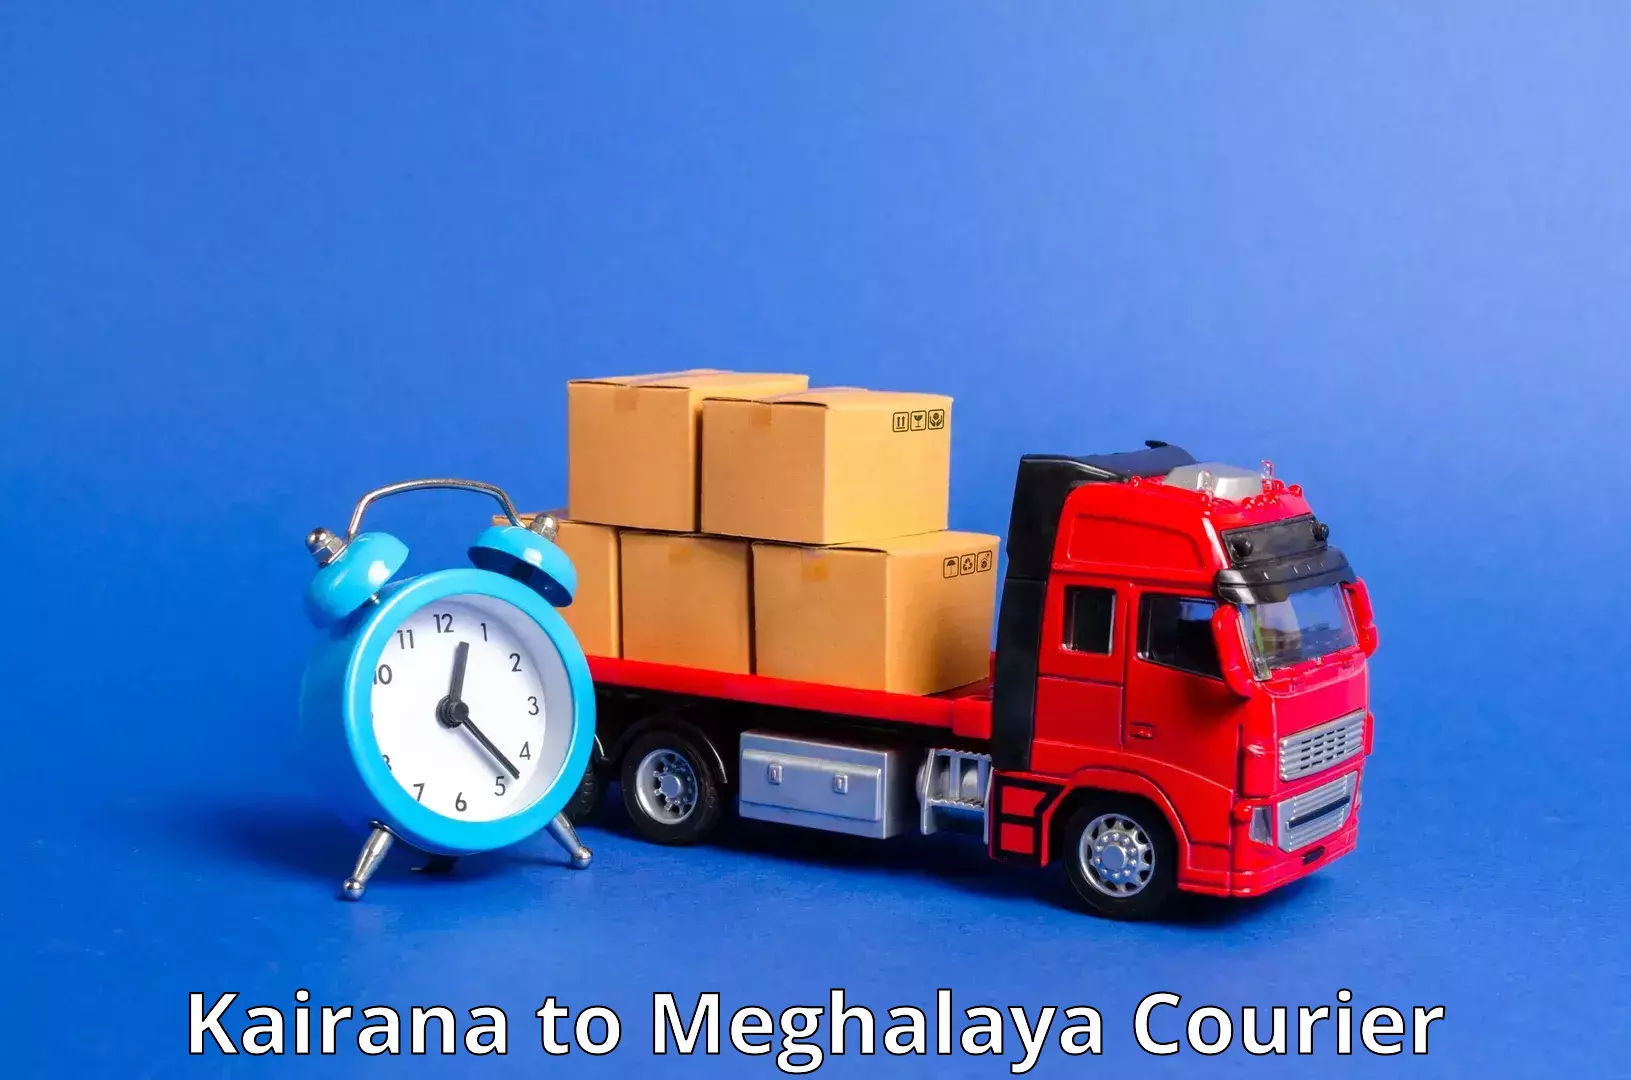 Customer-centric shipping Kairana to Umsaw